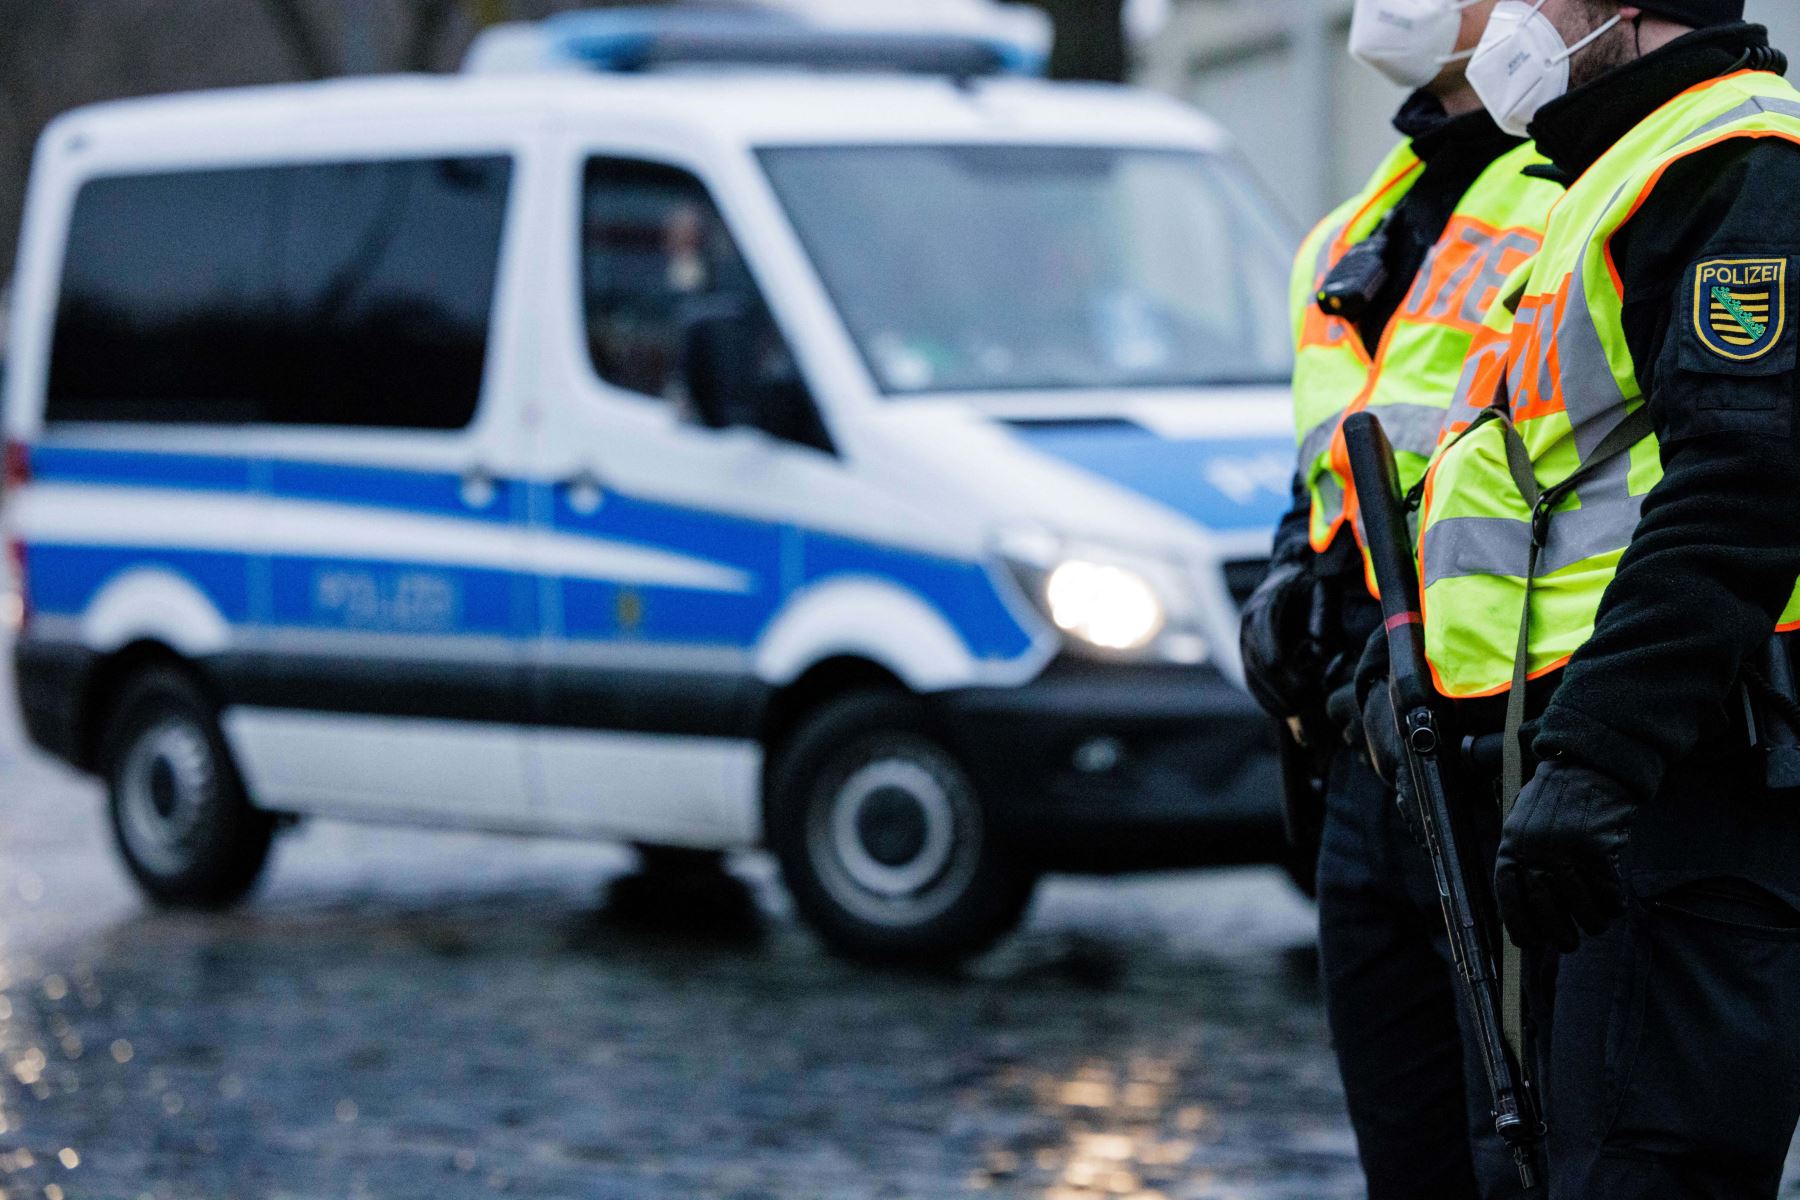 Cinco heridos en Alemania tras ataque con cuchillo en un tren regional